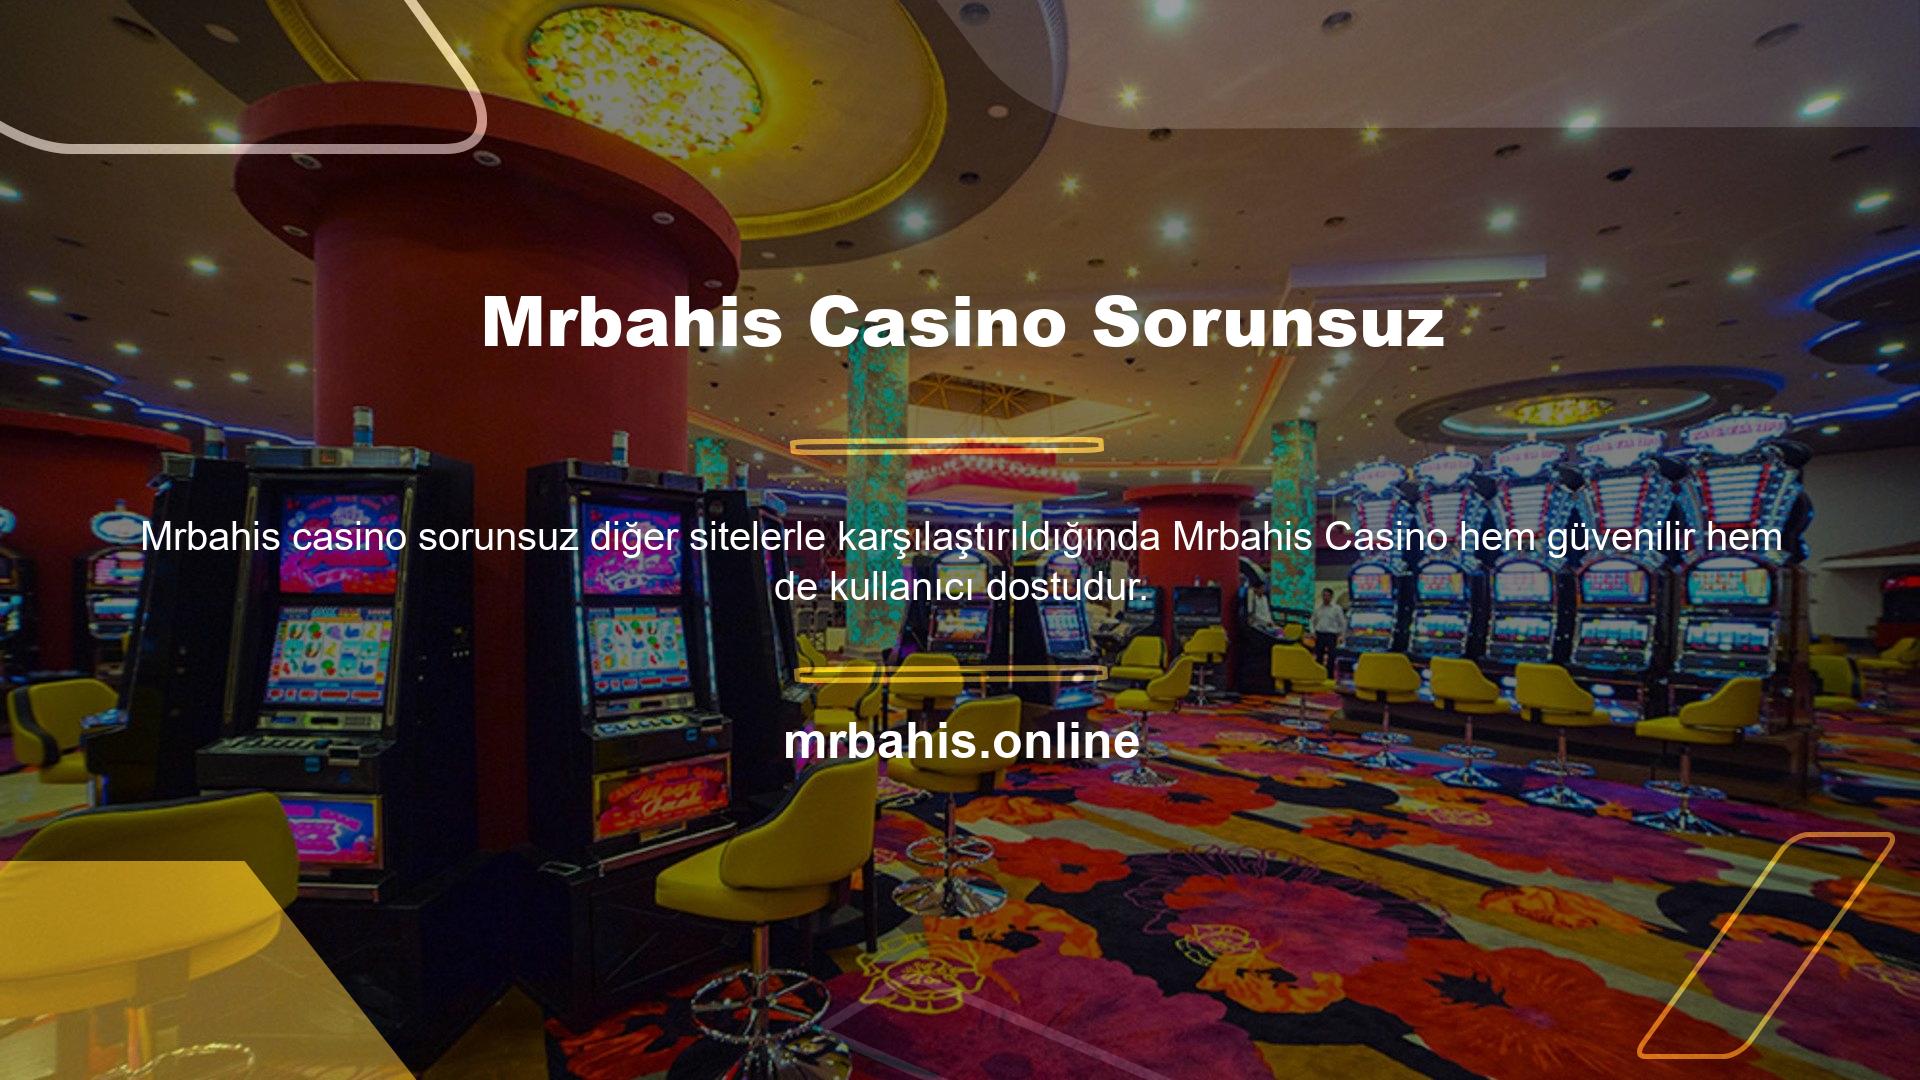 Açık olalım: Bu web sitesi diğer birçok çevrimiçi casinoya benzemez